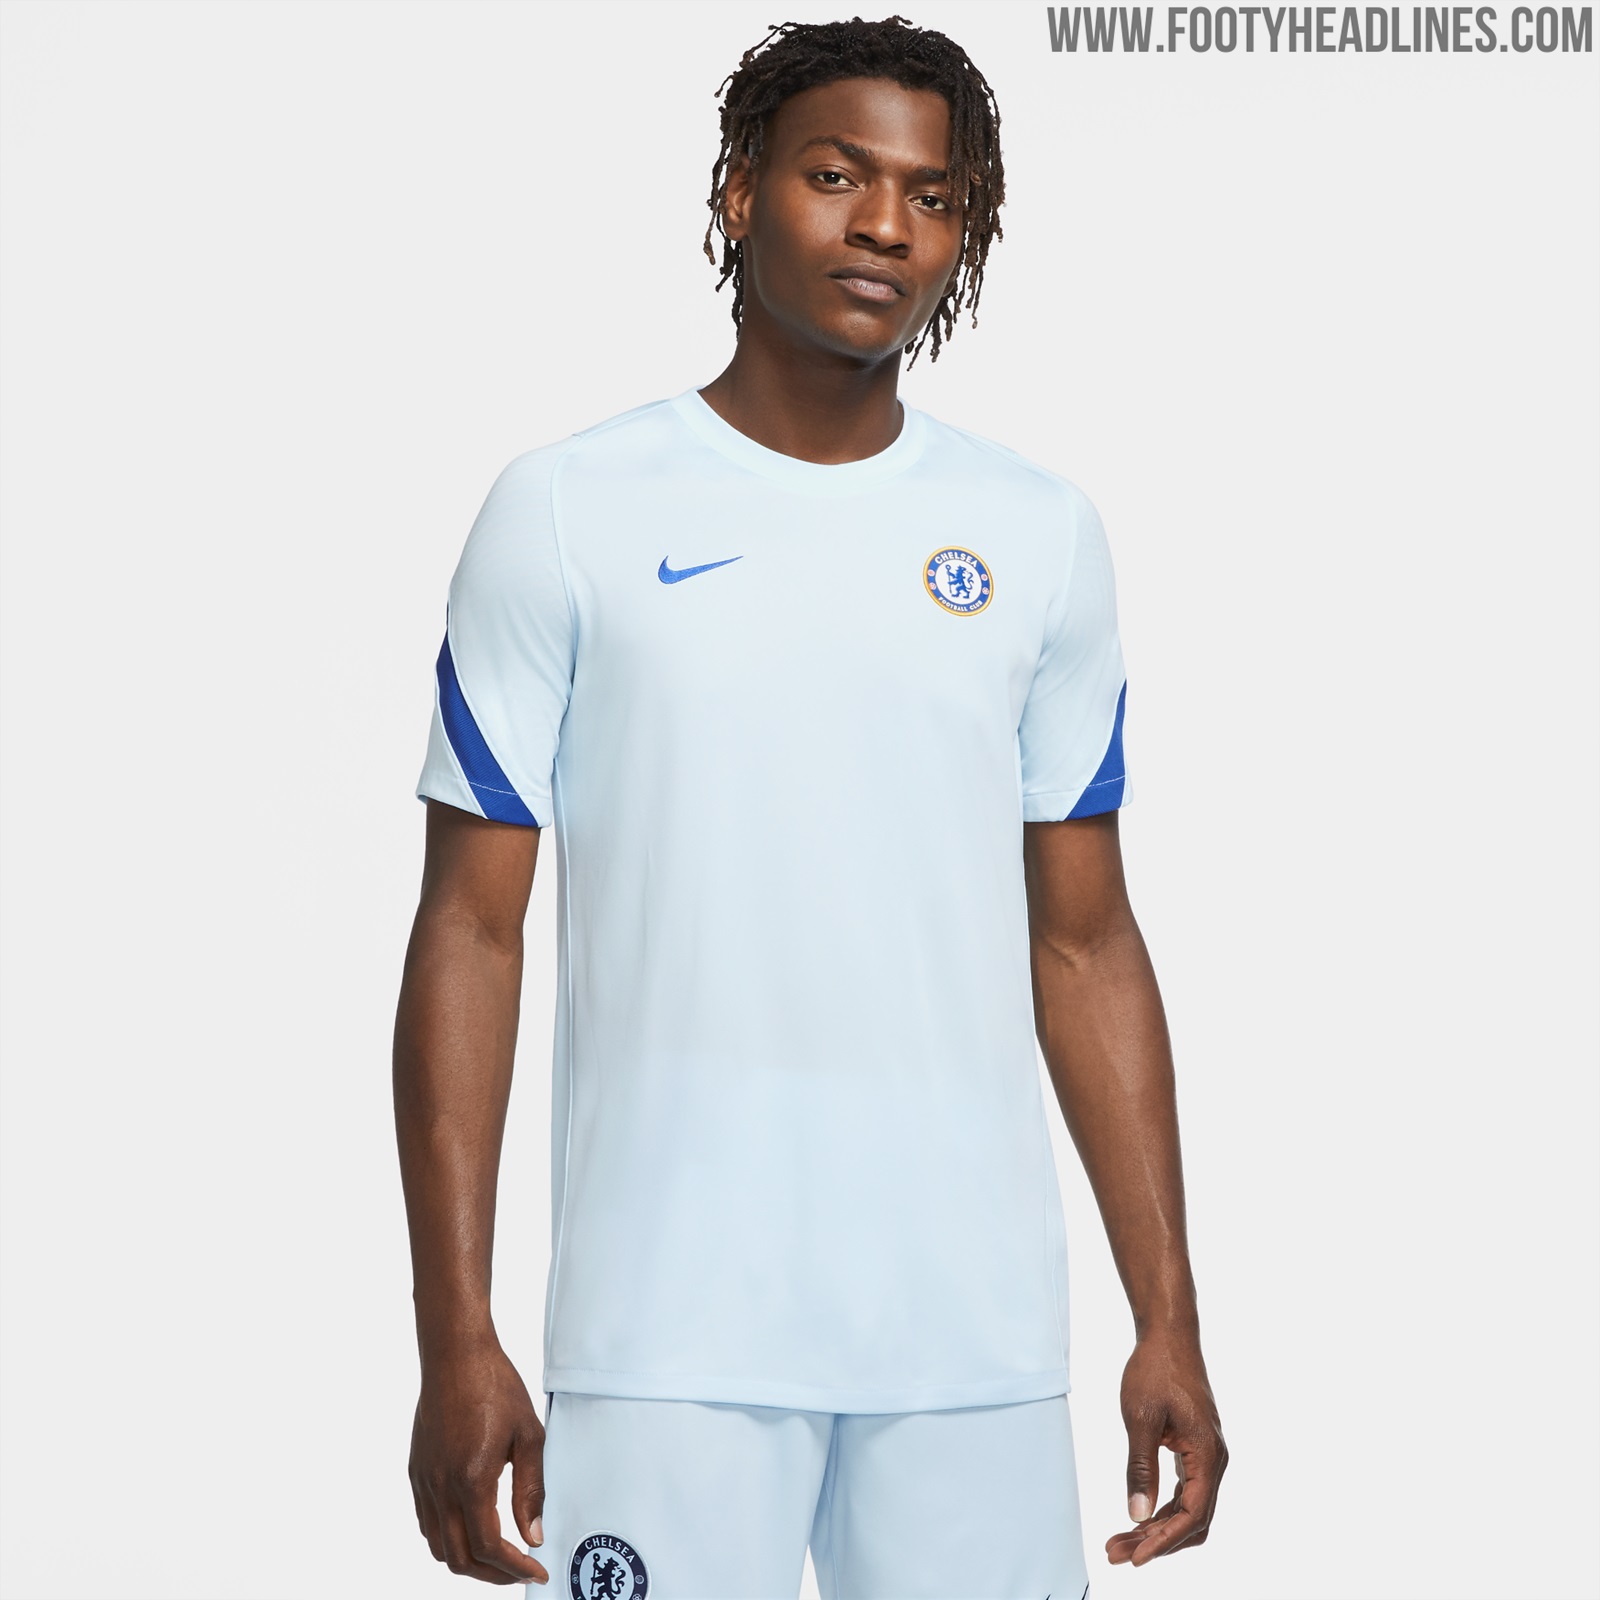 Away Kit Colors: Chelsea 20-21 Training Kit Leaked - No Sponsor Yet ...